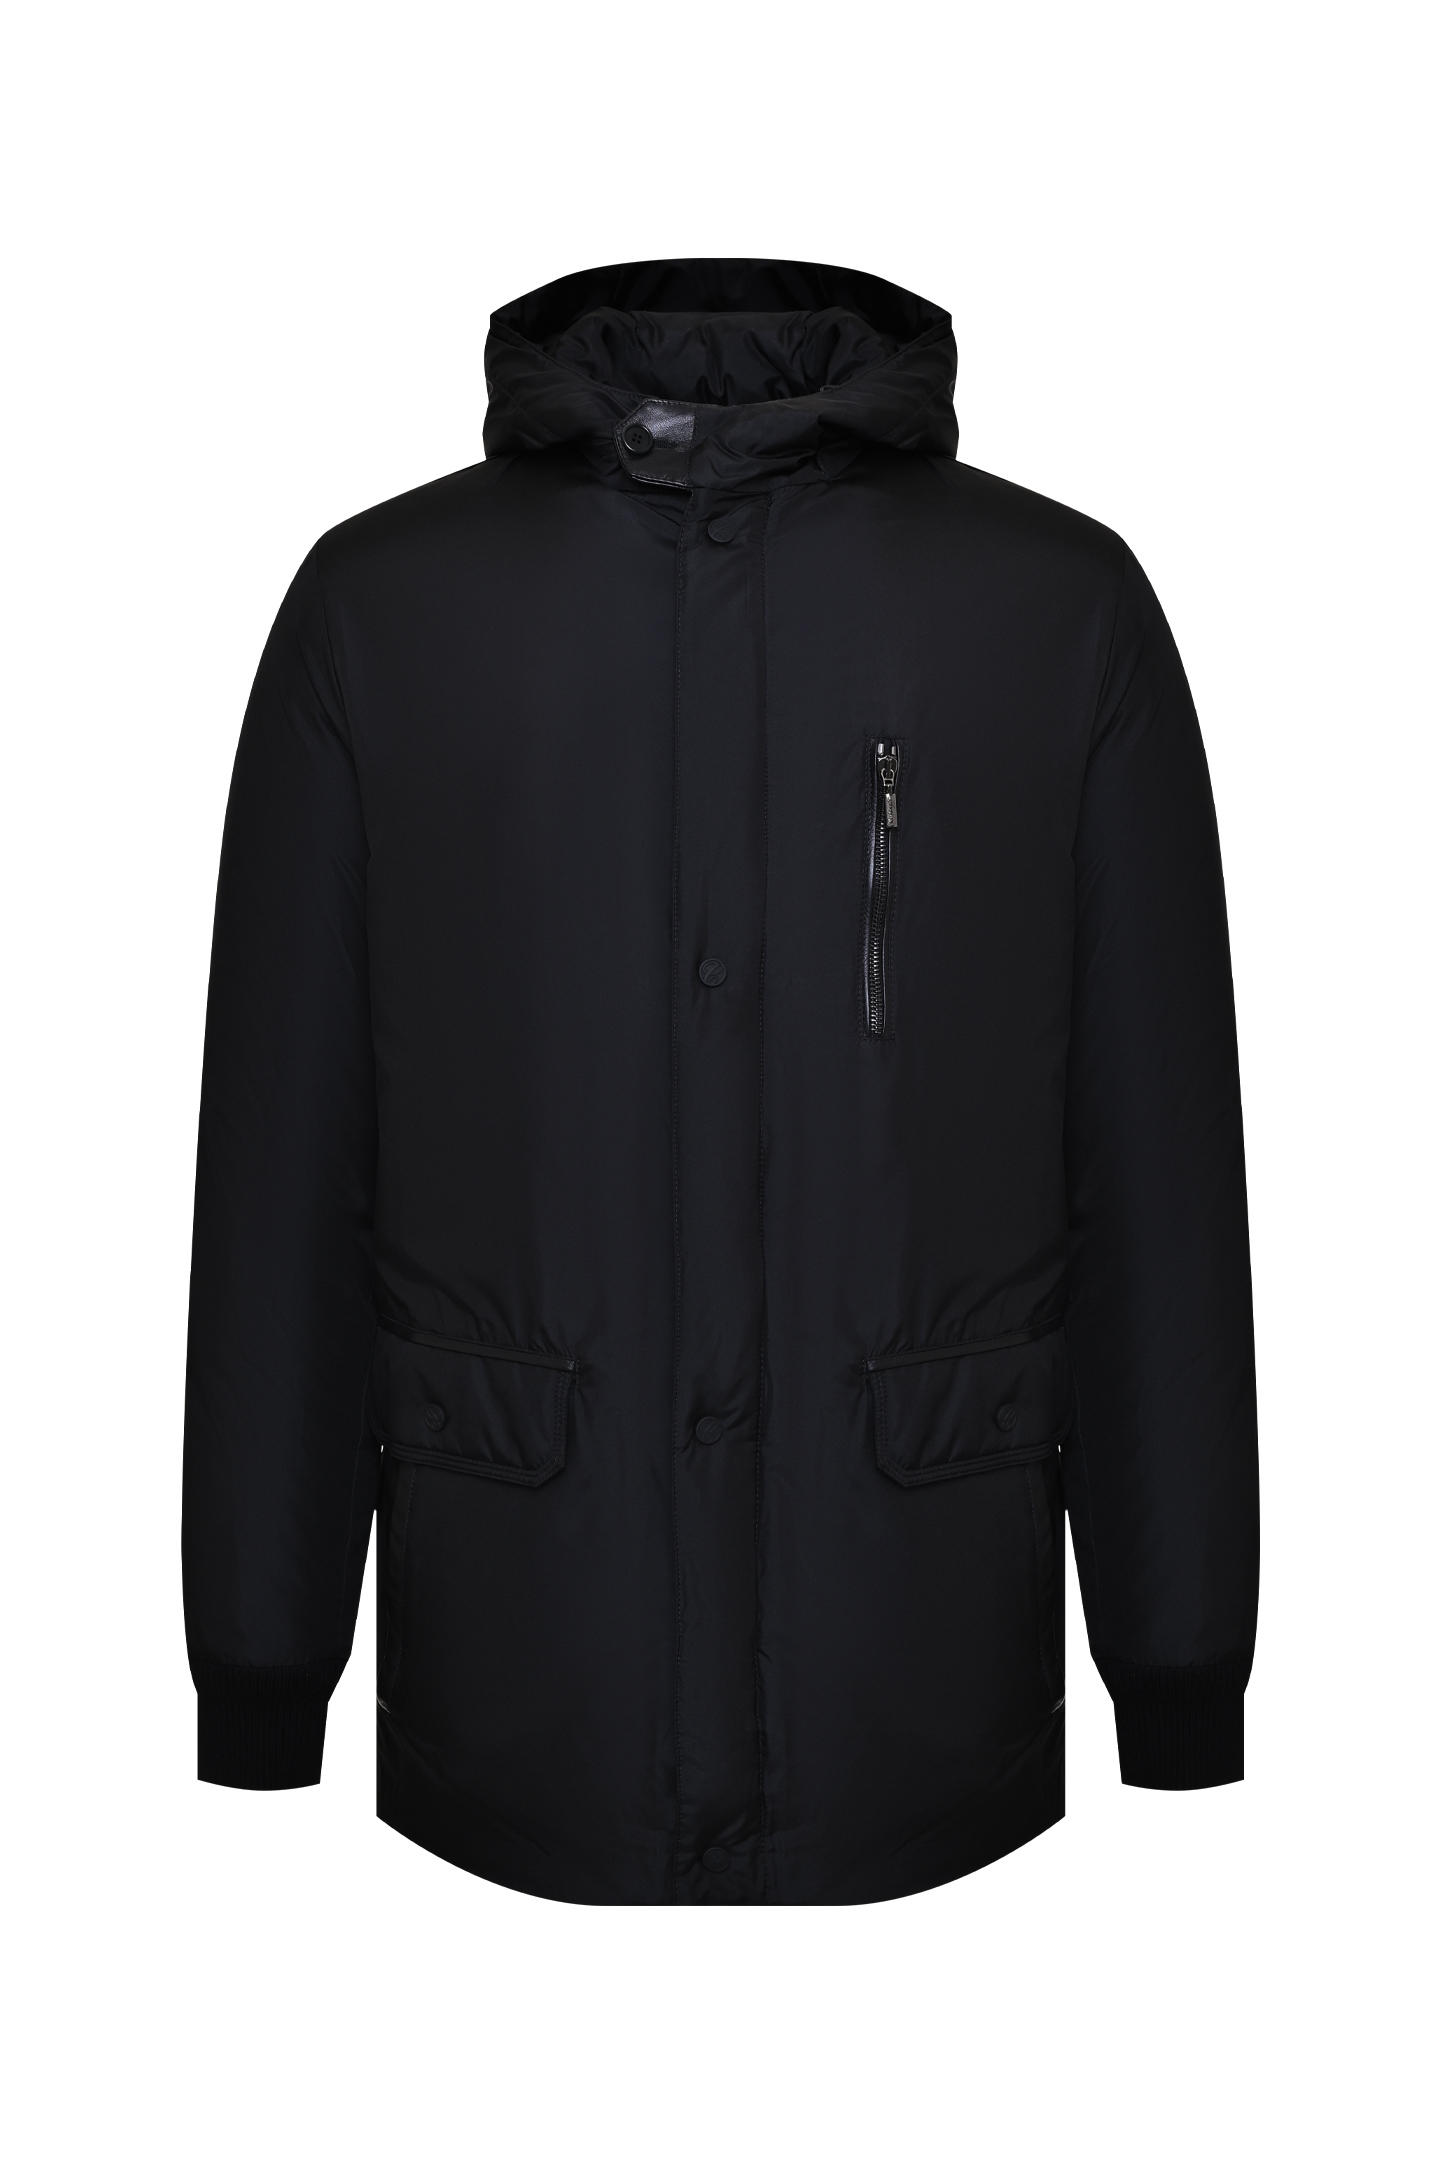 Куртка CASTANGIA MOD 17-23 N154/ZG 899, цвет: Черный, Мужской